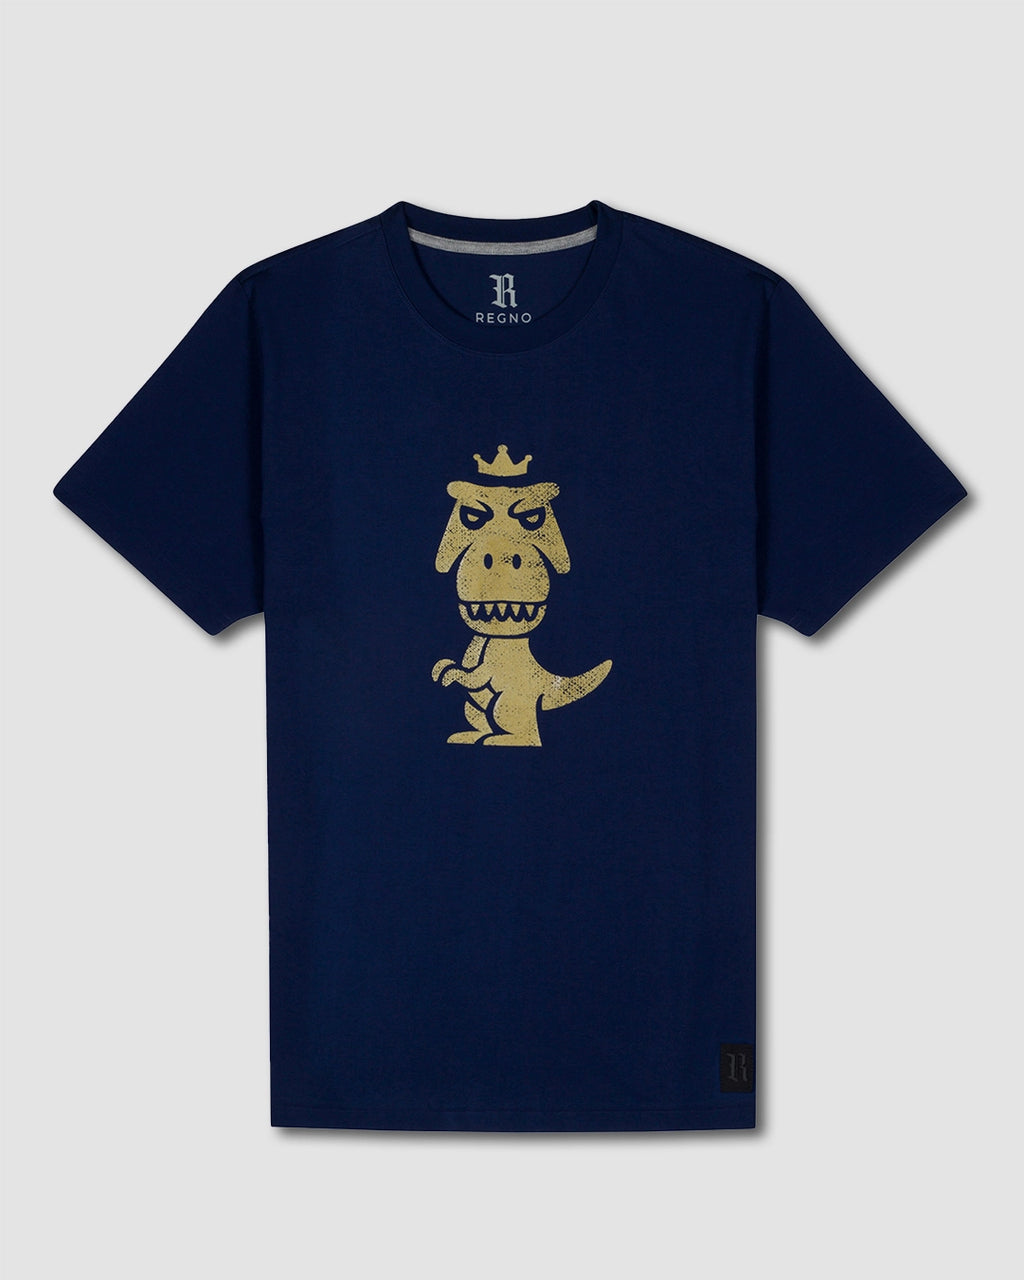 Ann Arbor T-shirt Co. T-REX NO Like Push-UPS, Camiseta regata divertida  para adultos para levantamento de peso, Preto, G